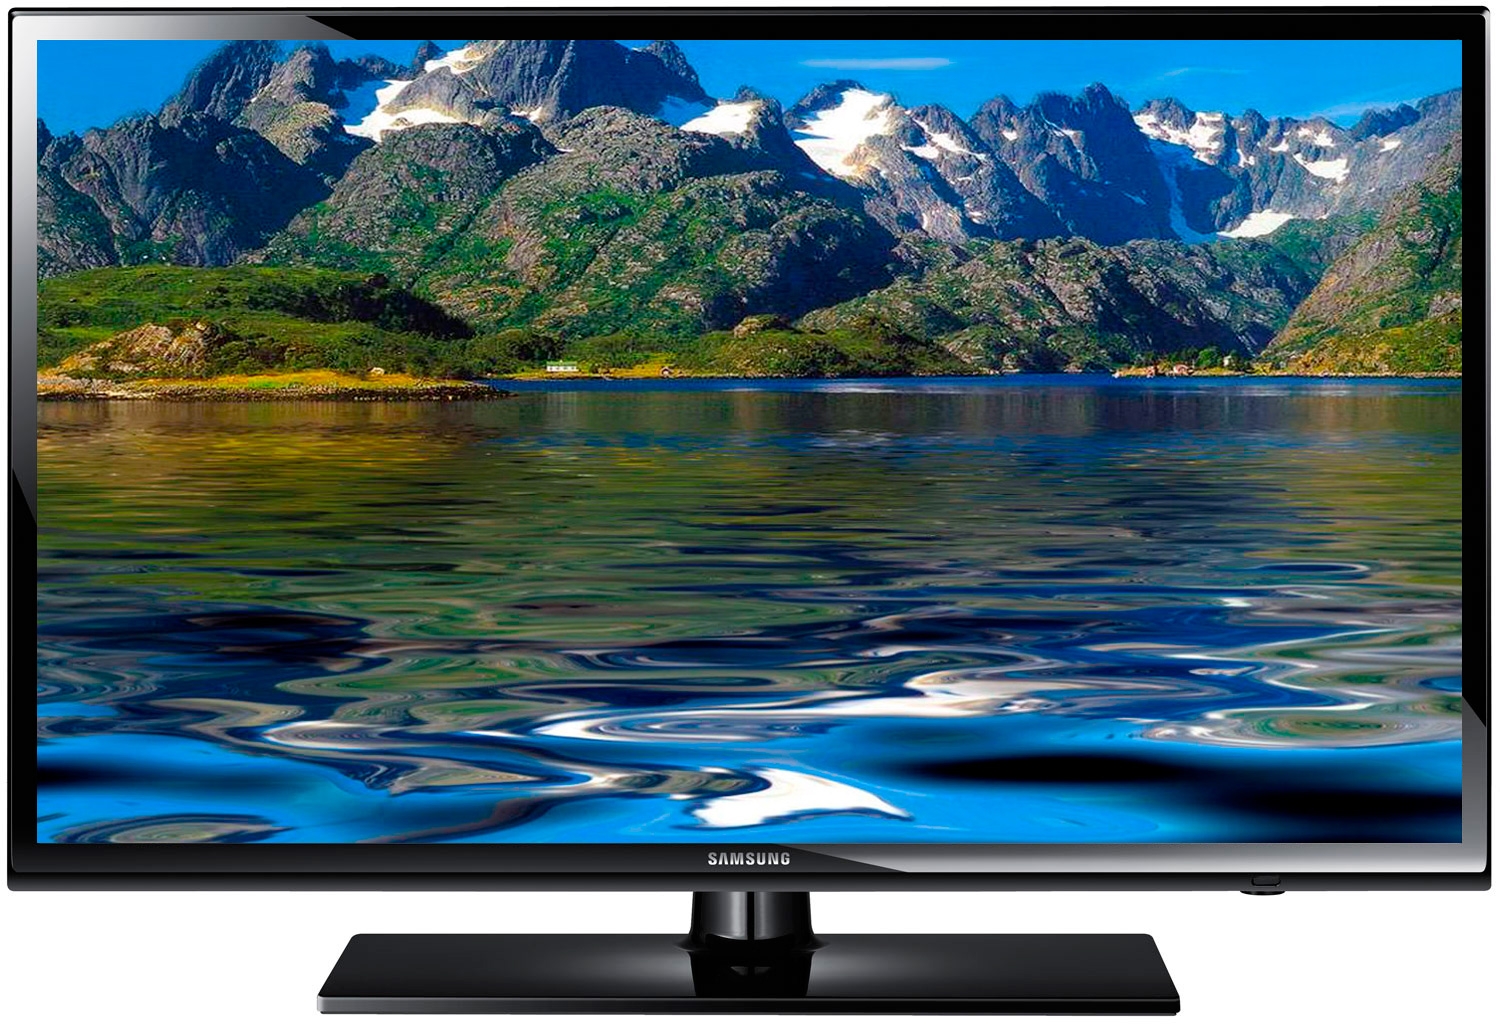 Samsung tv 32 дюймов. Самсунг смарт ТВ 32. Samsung Smart TV 32 дюйма. Samsung Smart TV 40. Телевизор самсунг 32 дюйма смарт.